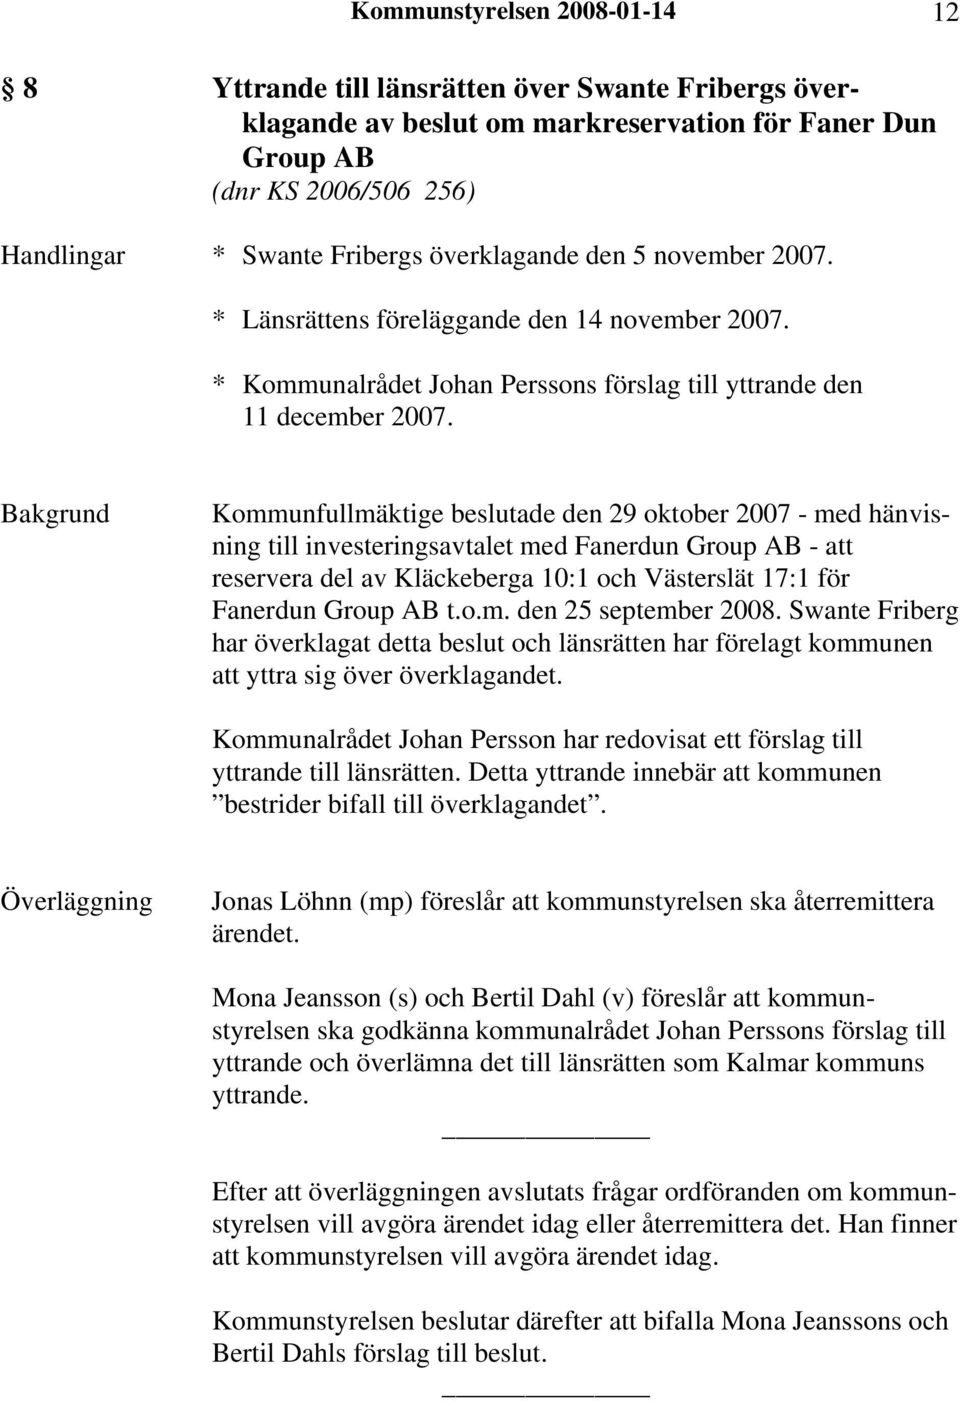 Kommunfullmäktige beslutade den 29 oktober 2007 - med hänvisning till investeringsavtalet med Fanerdun Group AB - att reservera del av Kläckeberga 10:1 och Västerslät 17:1 för Fanerdun Group AB t.o.m. den 25 september 2008.